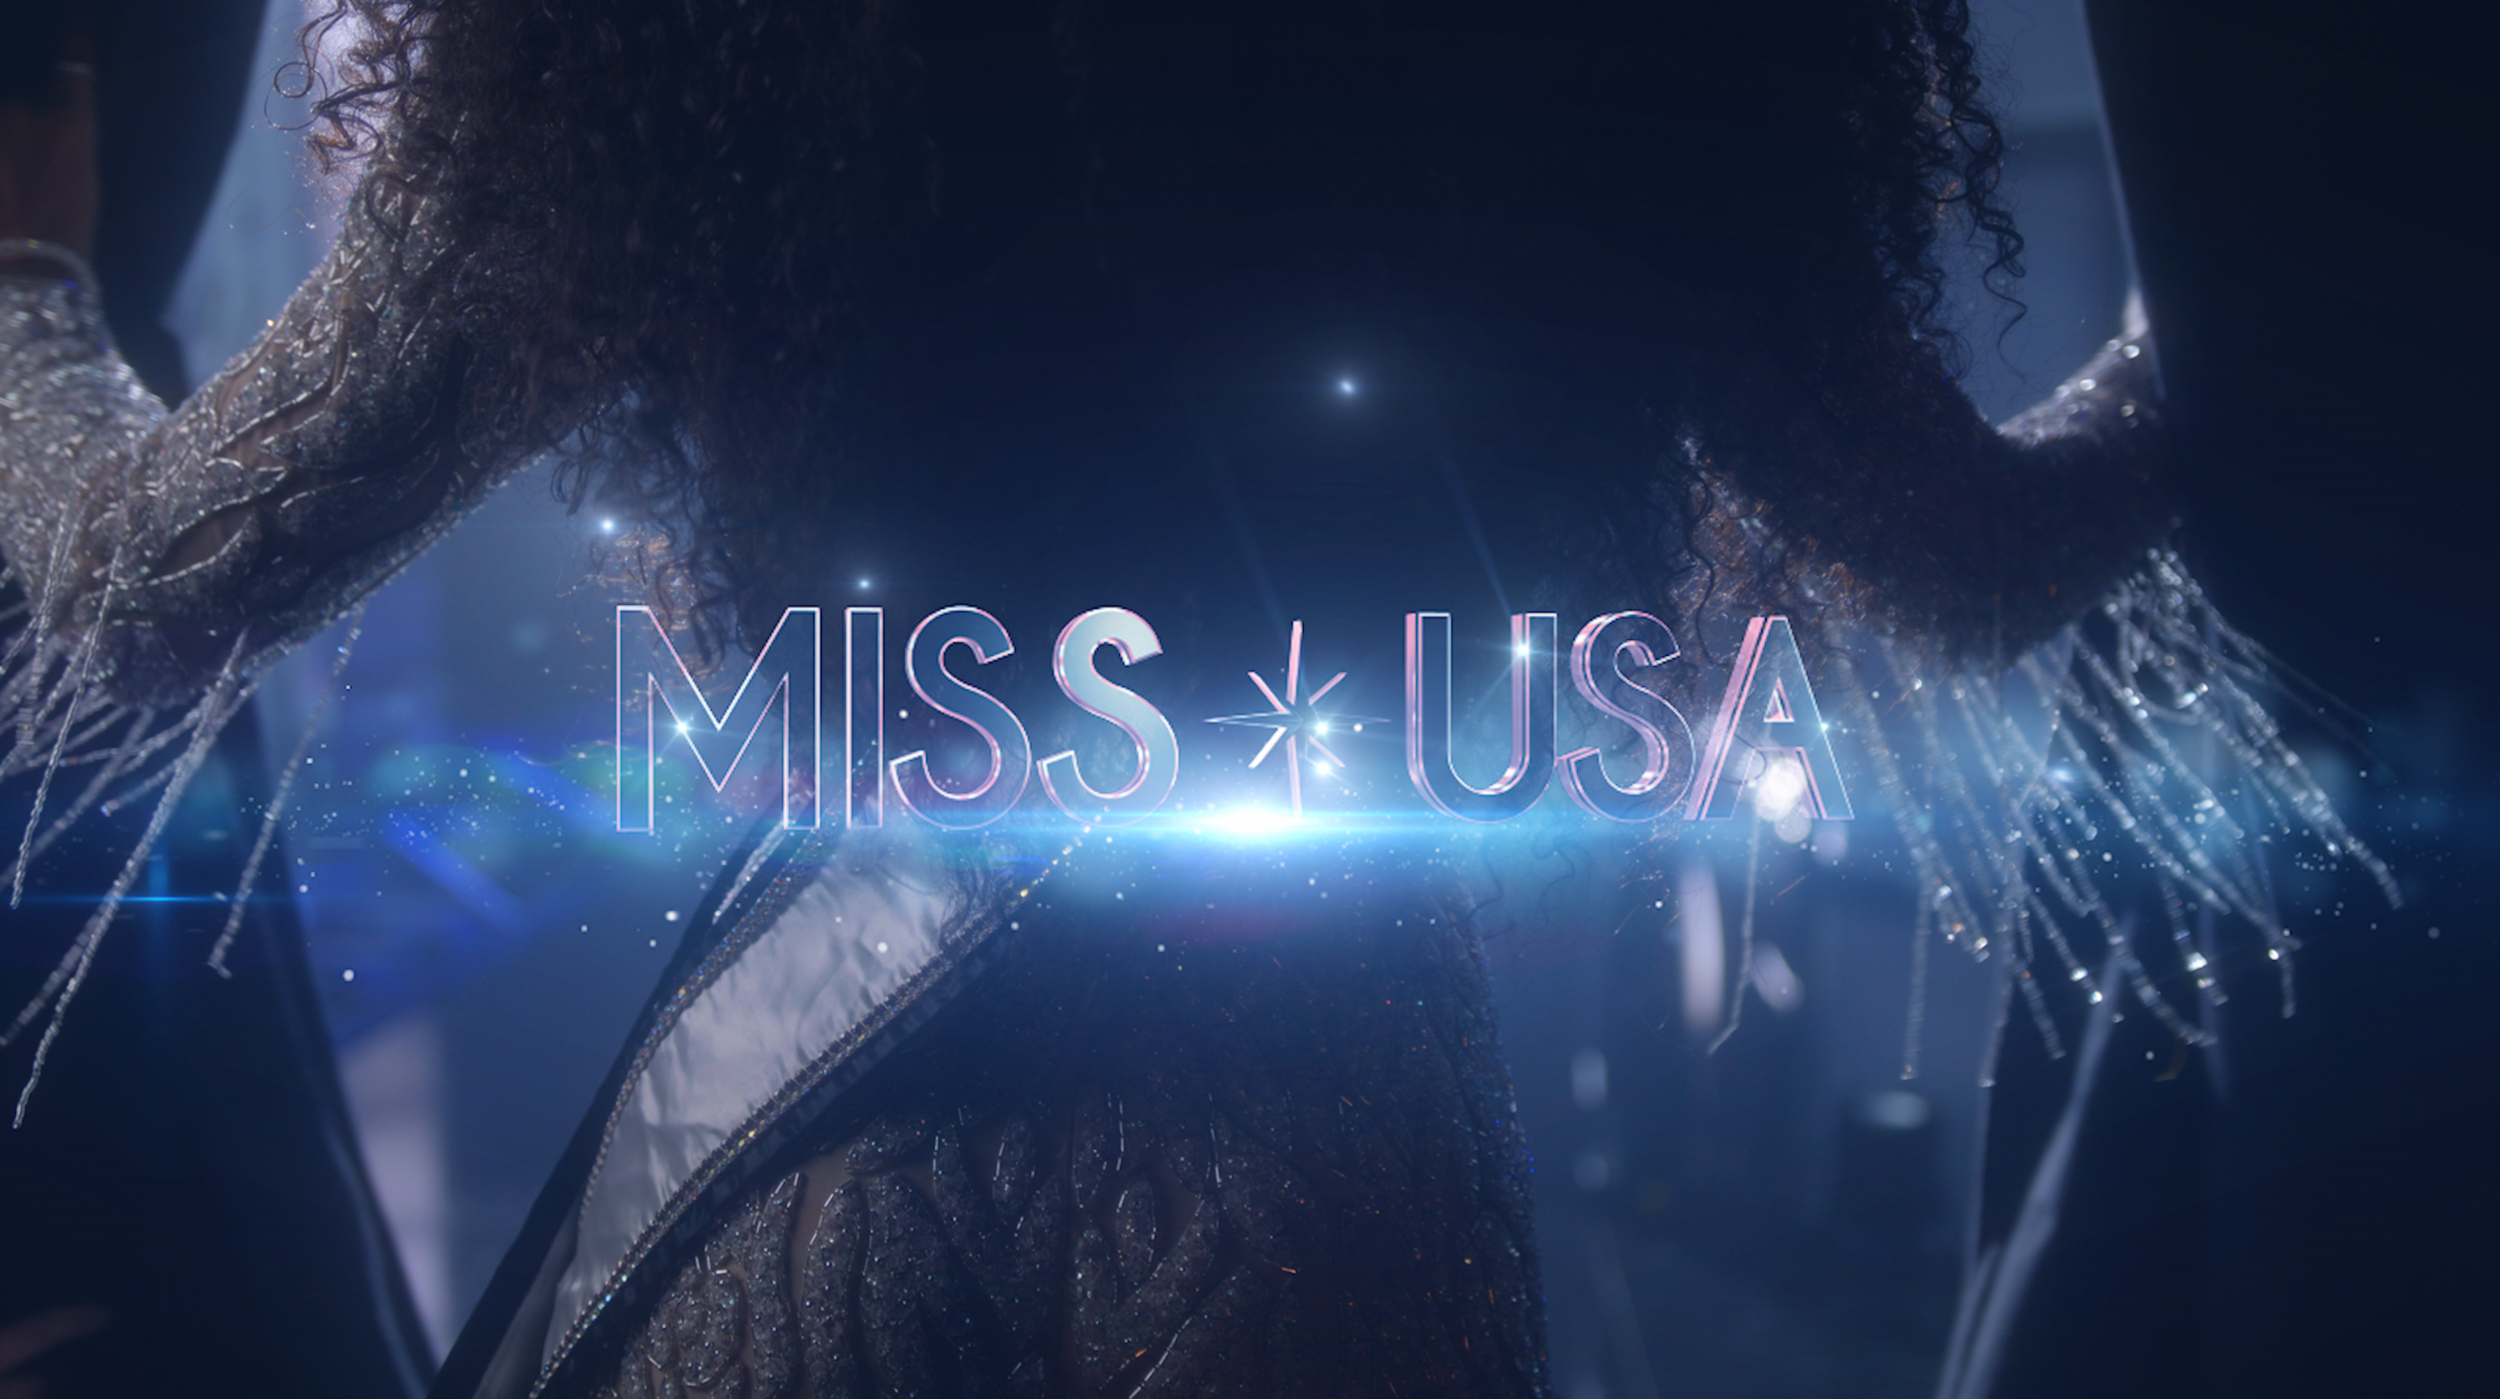 Miss USA|https://vimeo.com/500285581/c5ee655e23